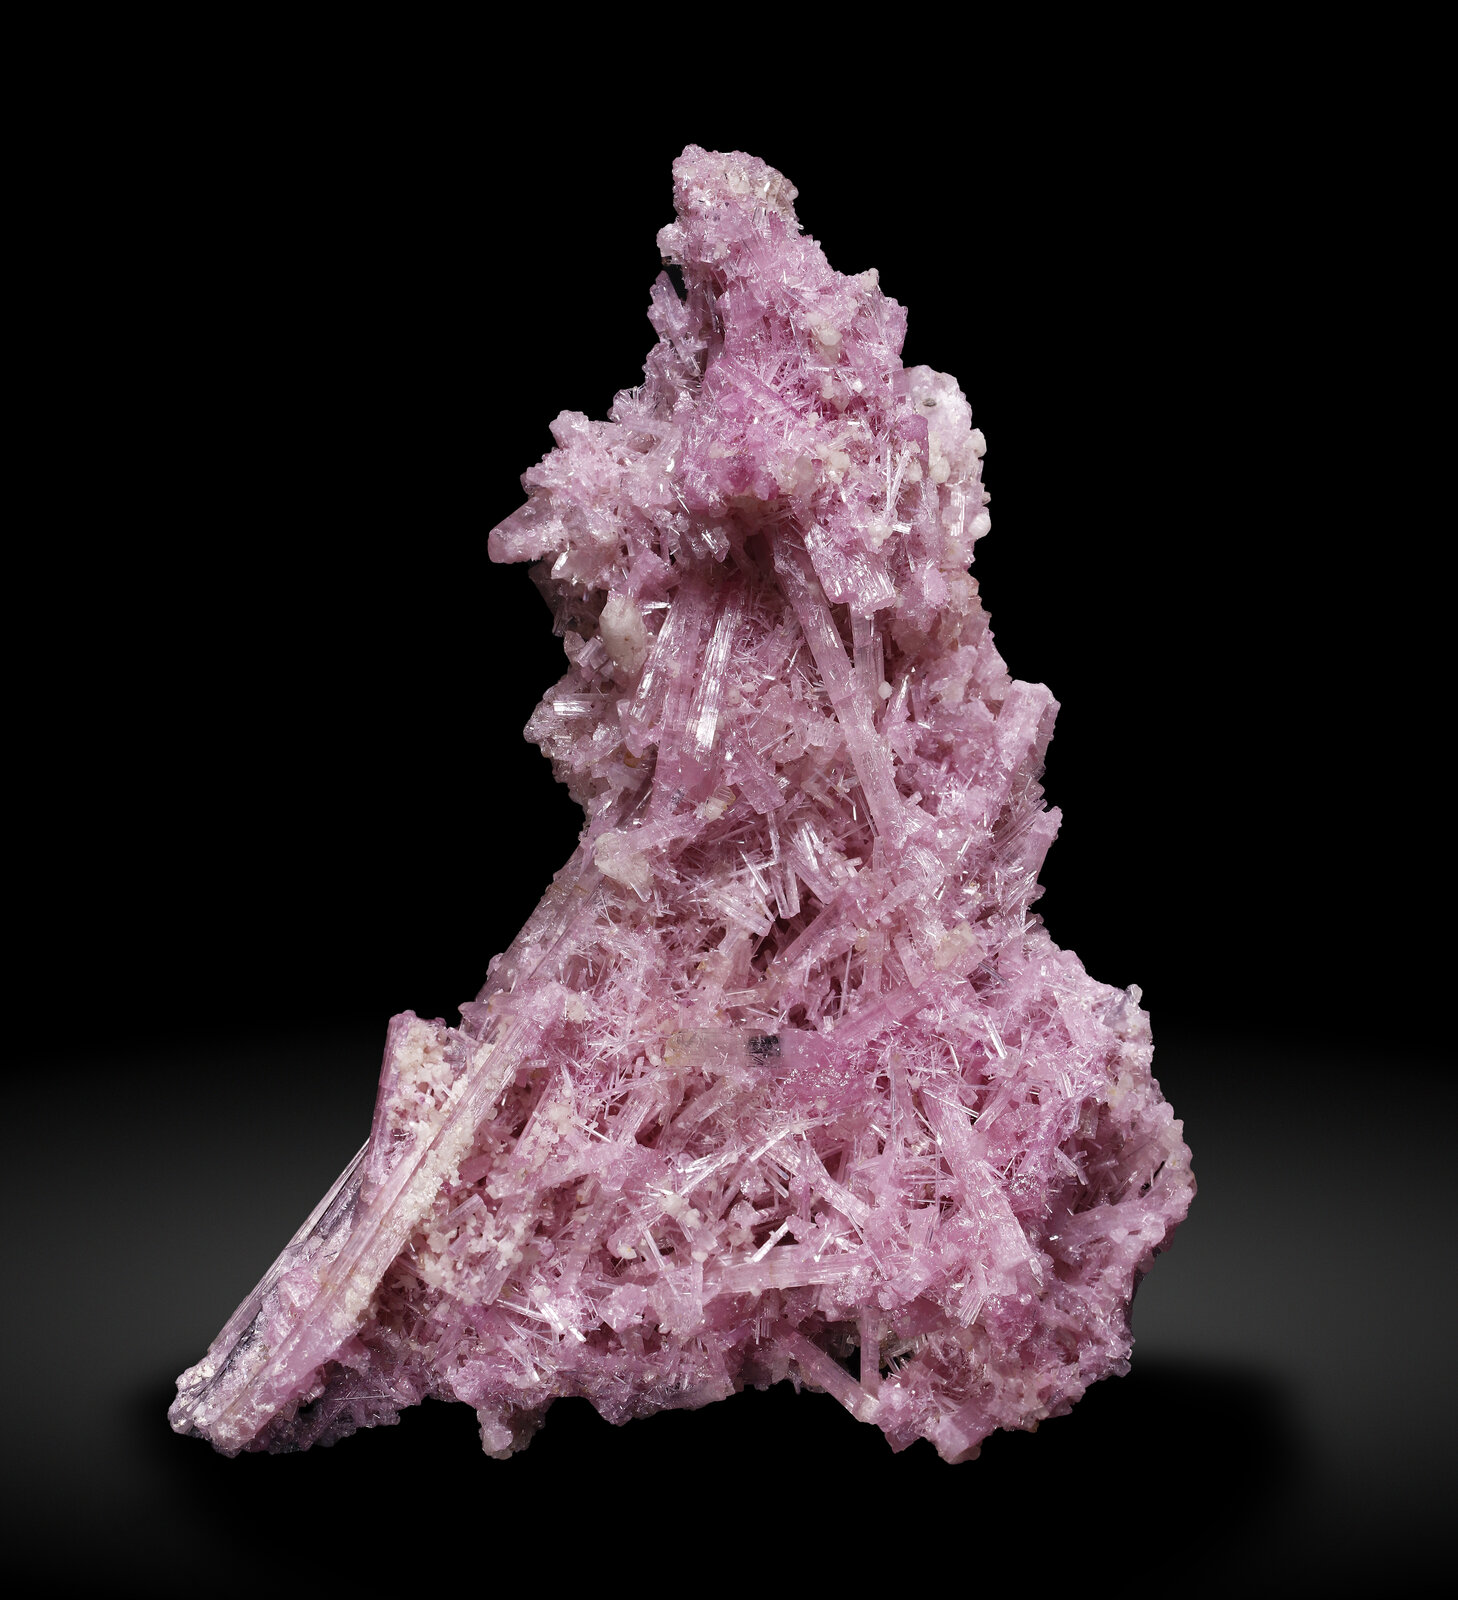 specimens/s_imagesAP9/Elbaite-TPP86AP9_4111_f.jpg